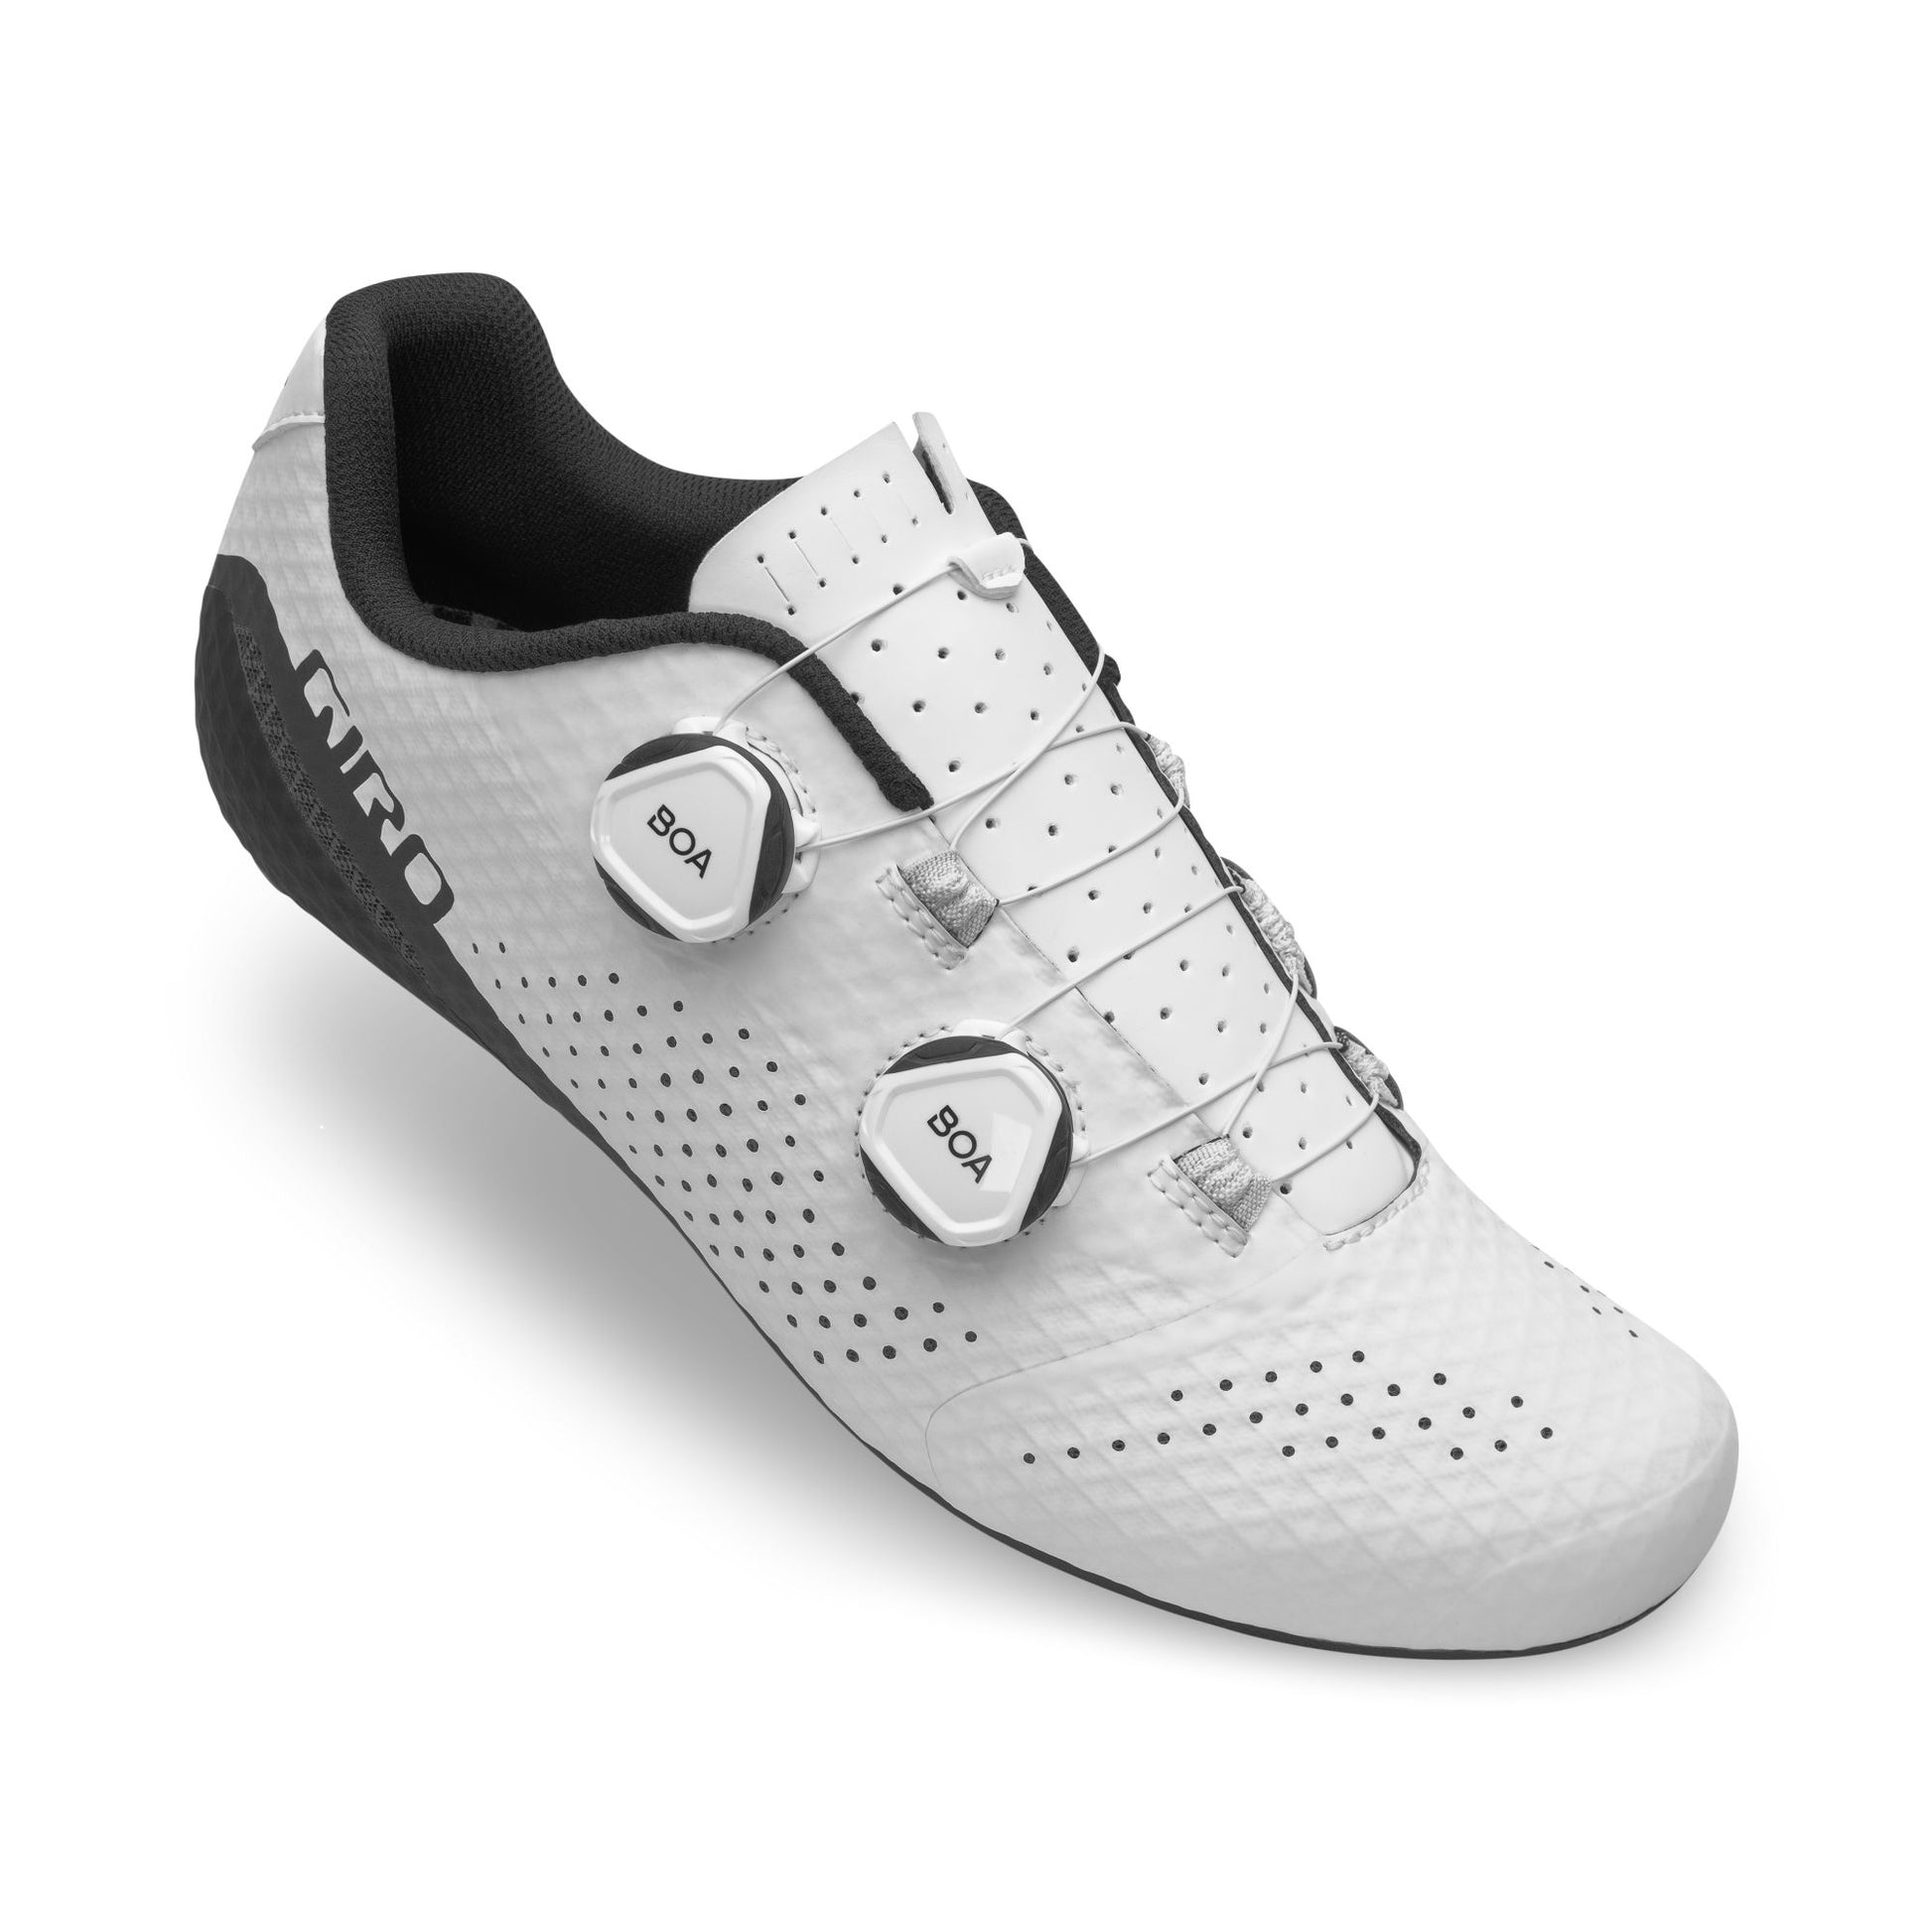 Giro Men's Regime Shoe White Bike Shoes